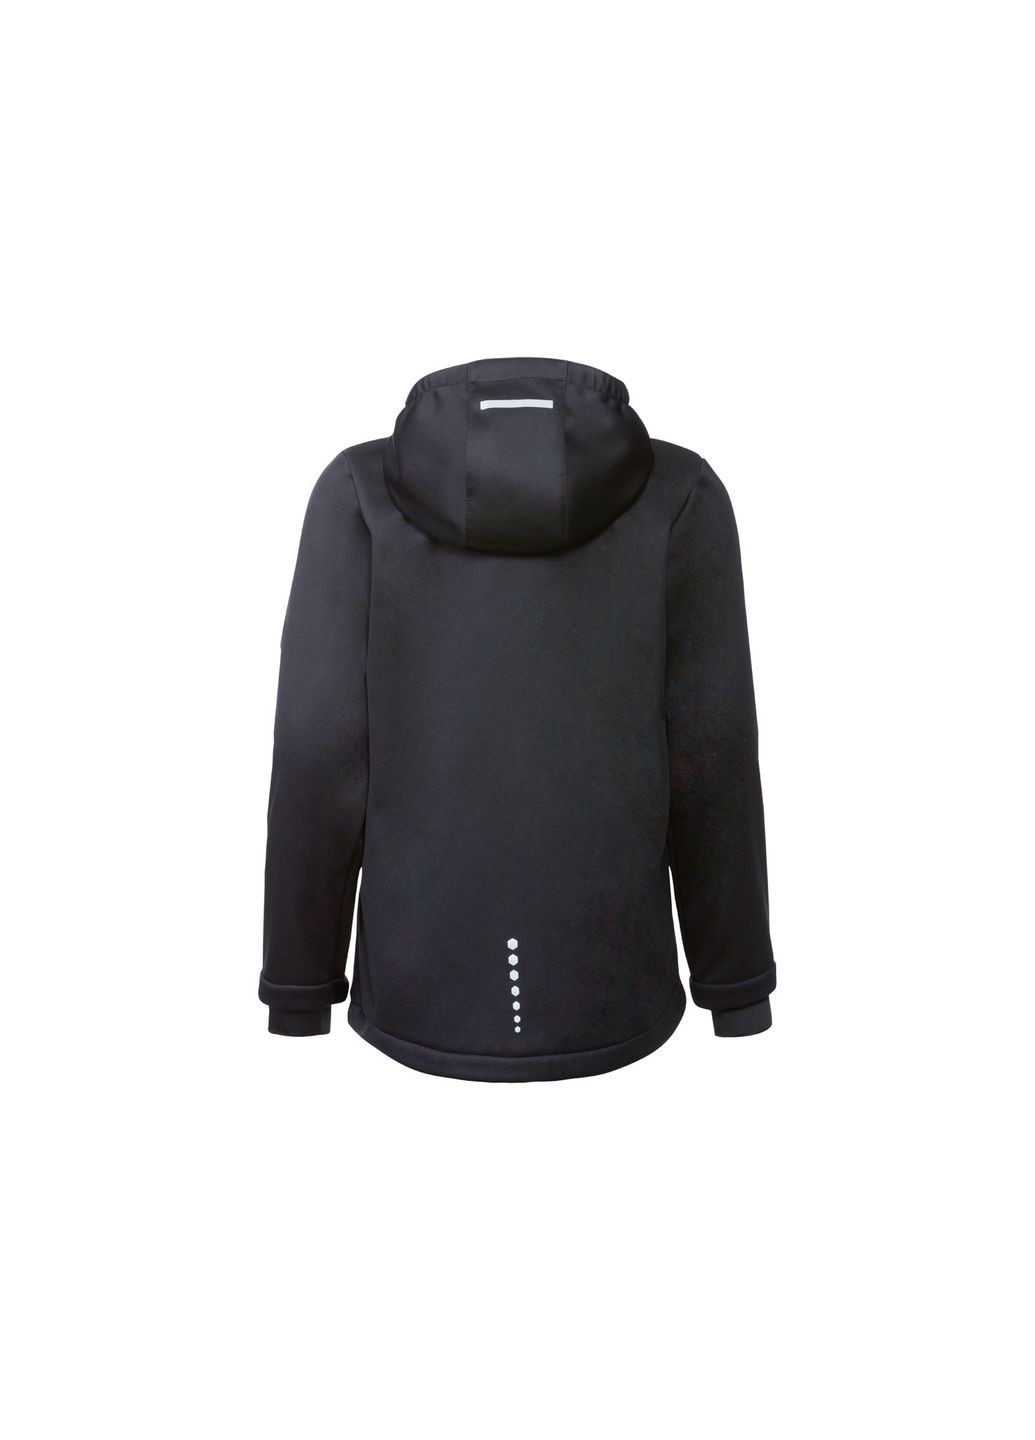 Черная демисезонная куртка softshell водоотталкивающая и ветрозащитная для девочки bionic-finish® eco 358145 Crivit